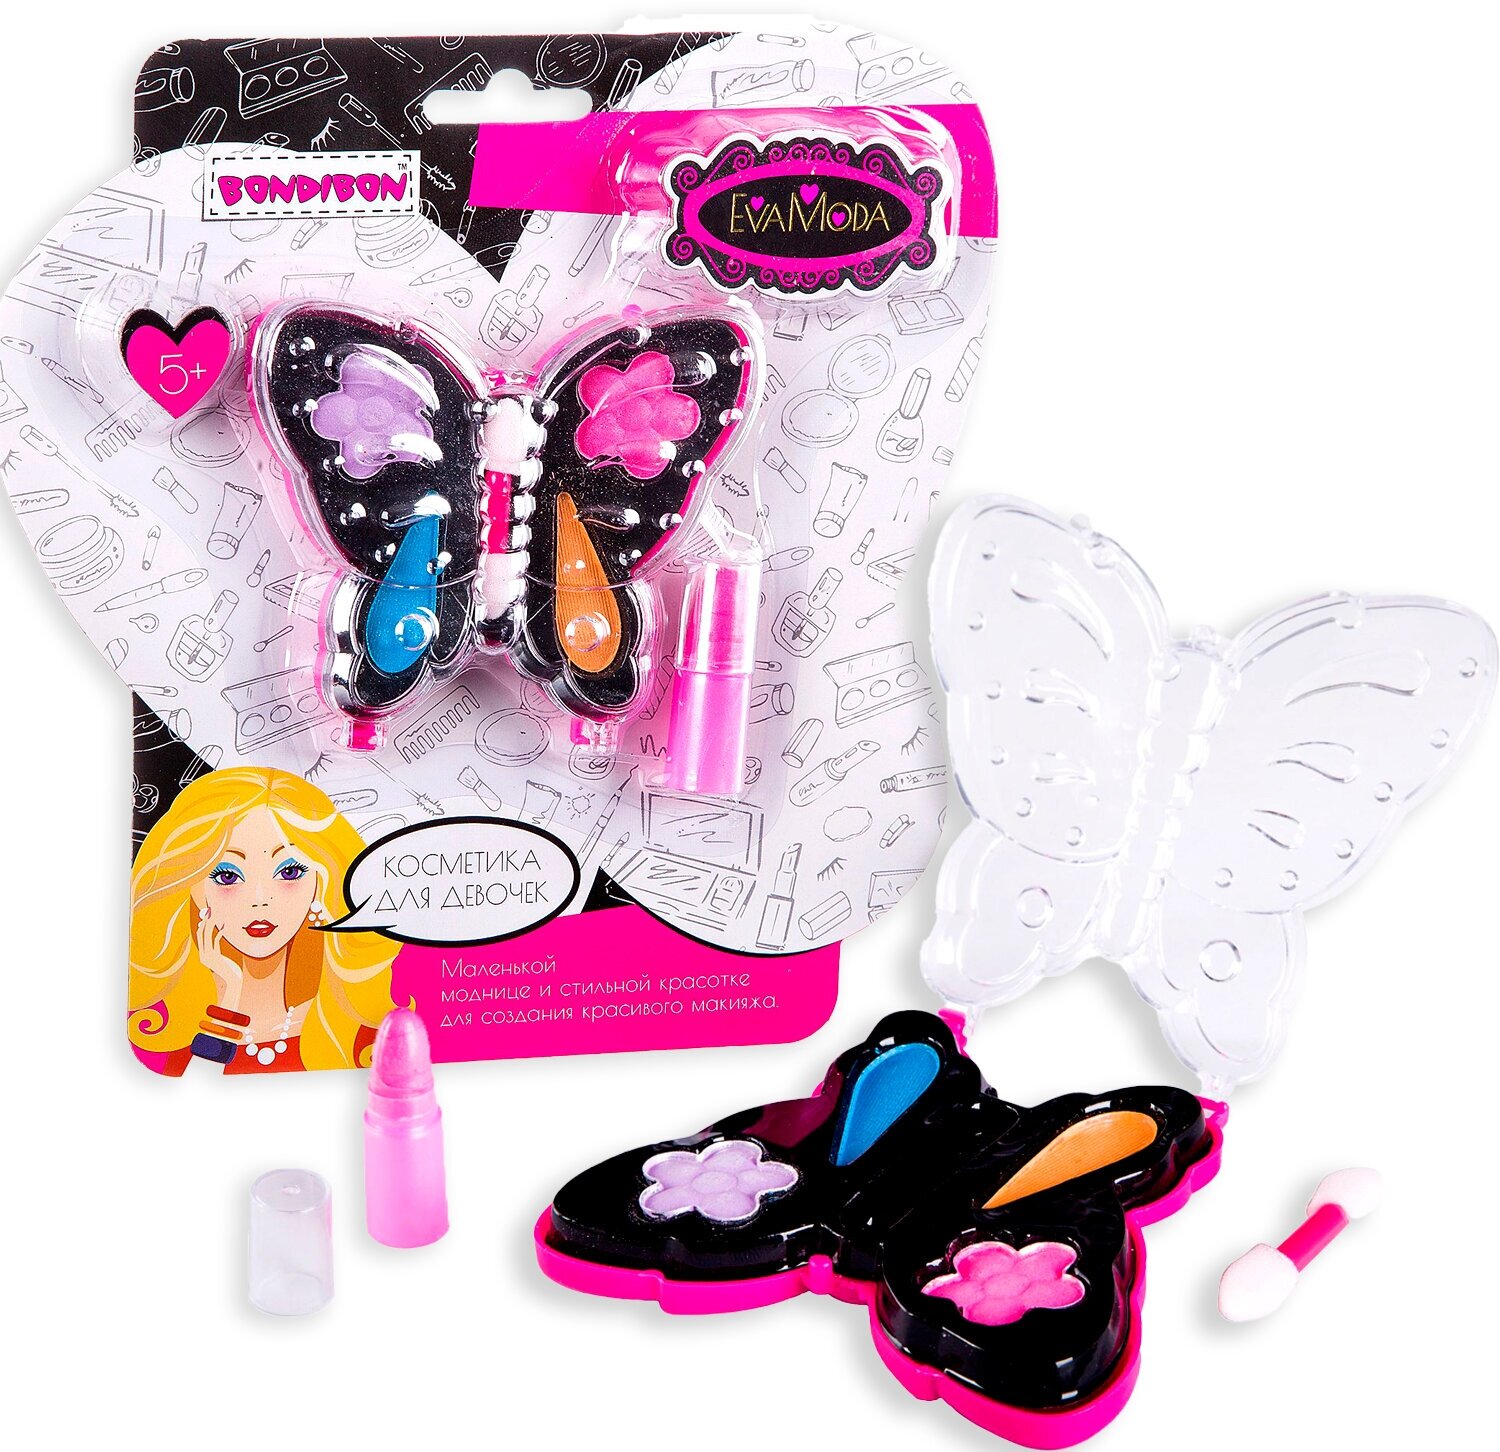 Набор детской декоративной косметики в косметичке палетке бабочка чёрная, 4 оттенка теней, помада Eva Moda Bondibon подарок девочке